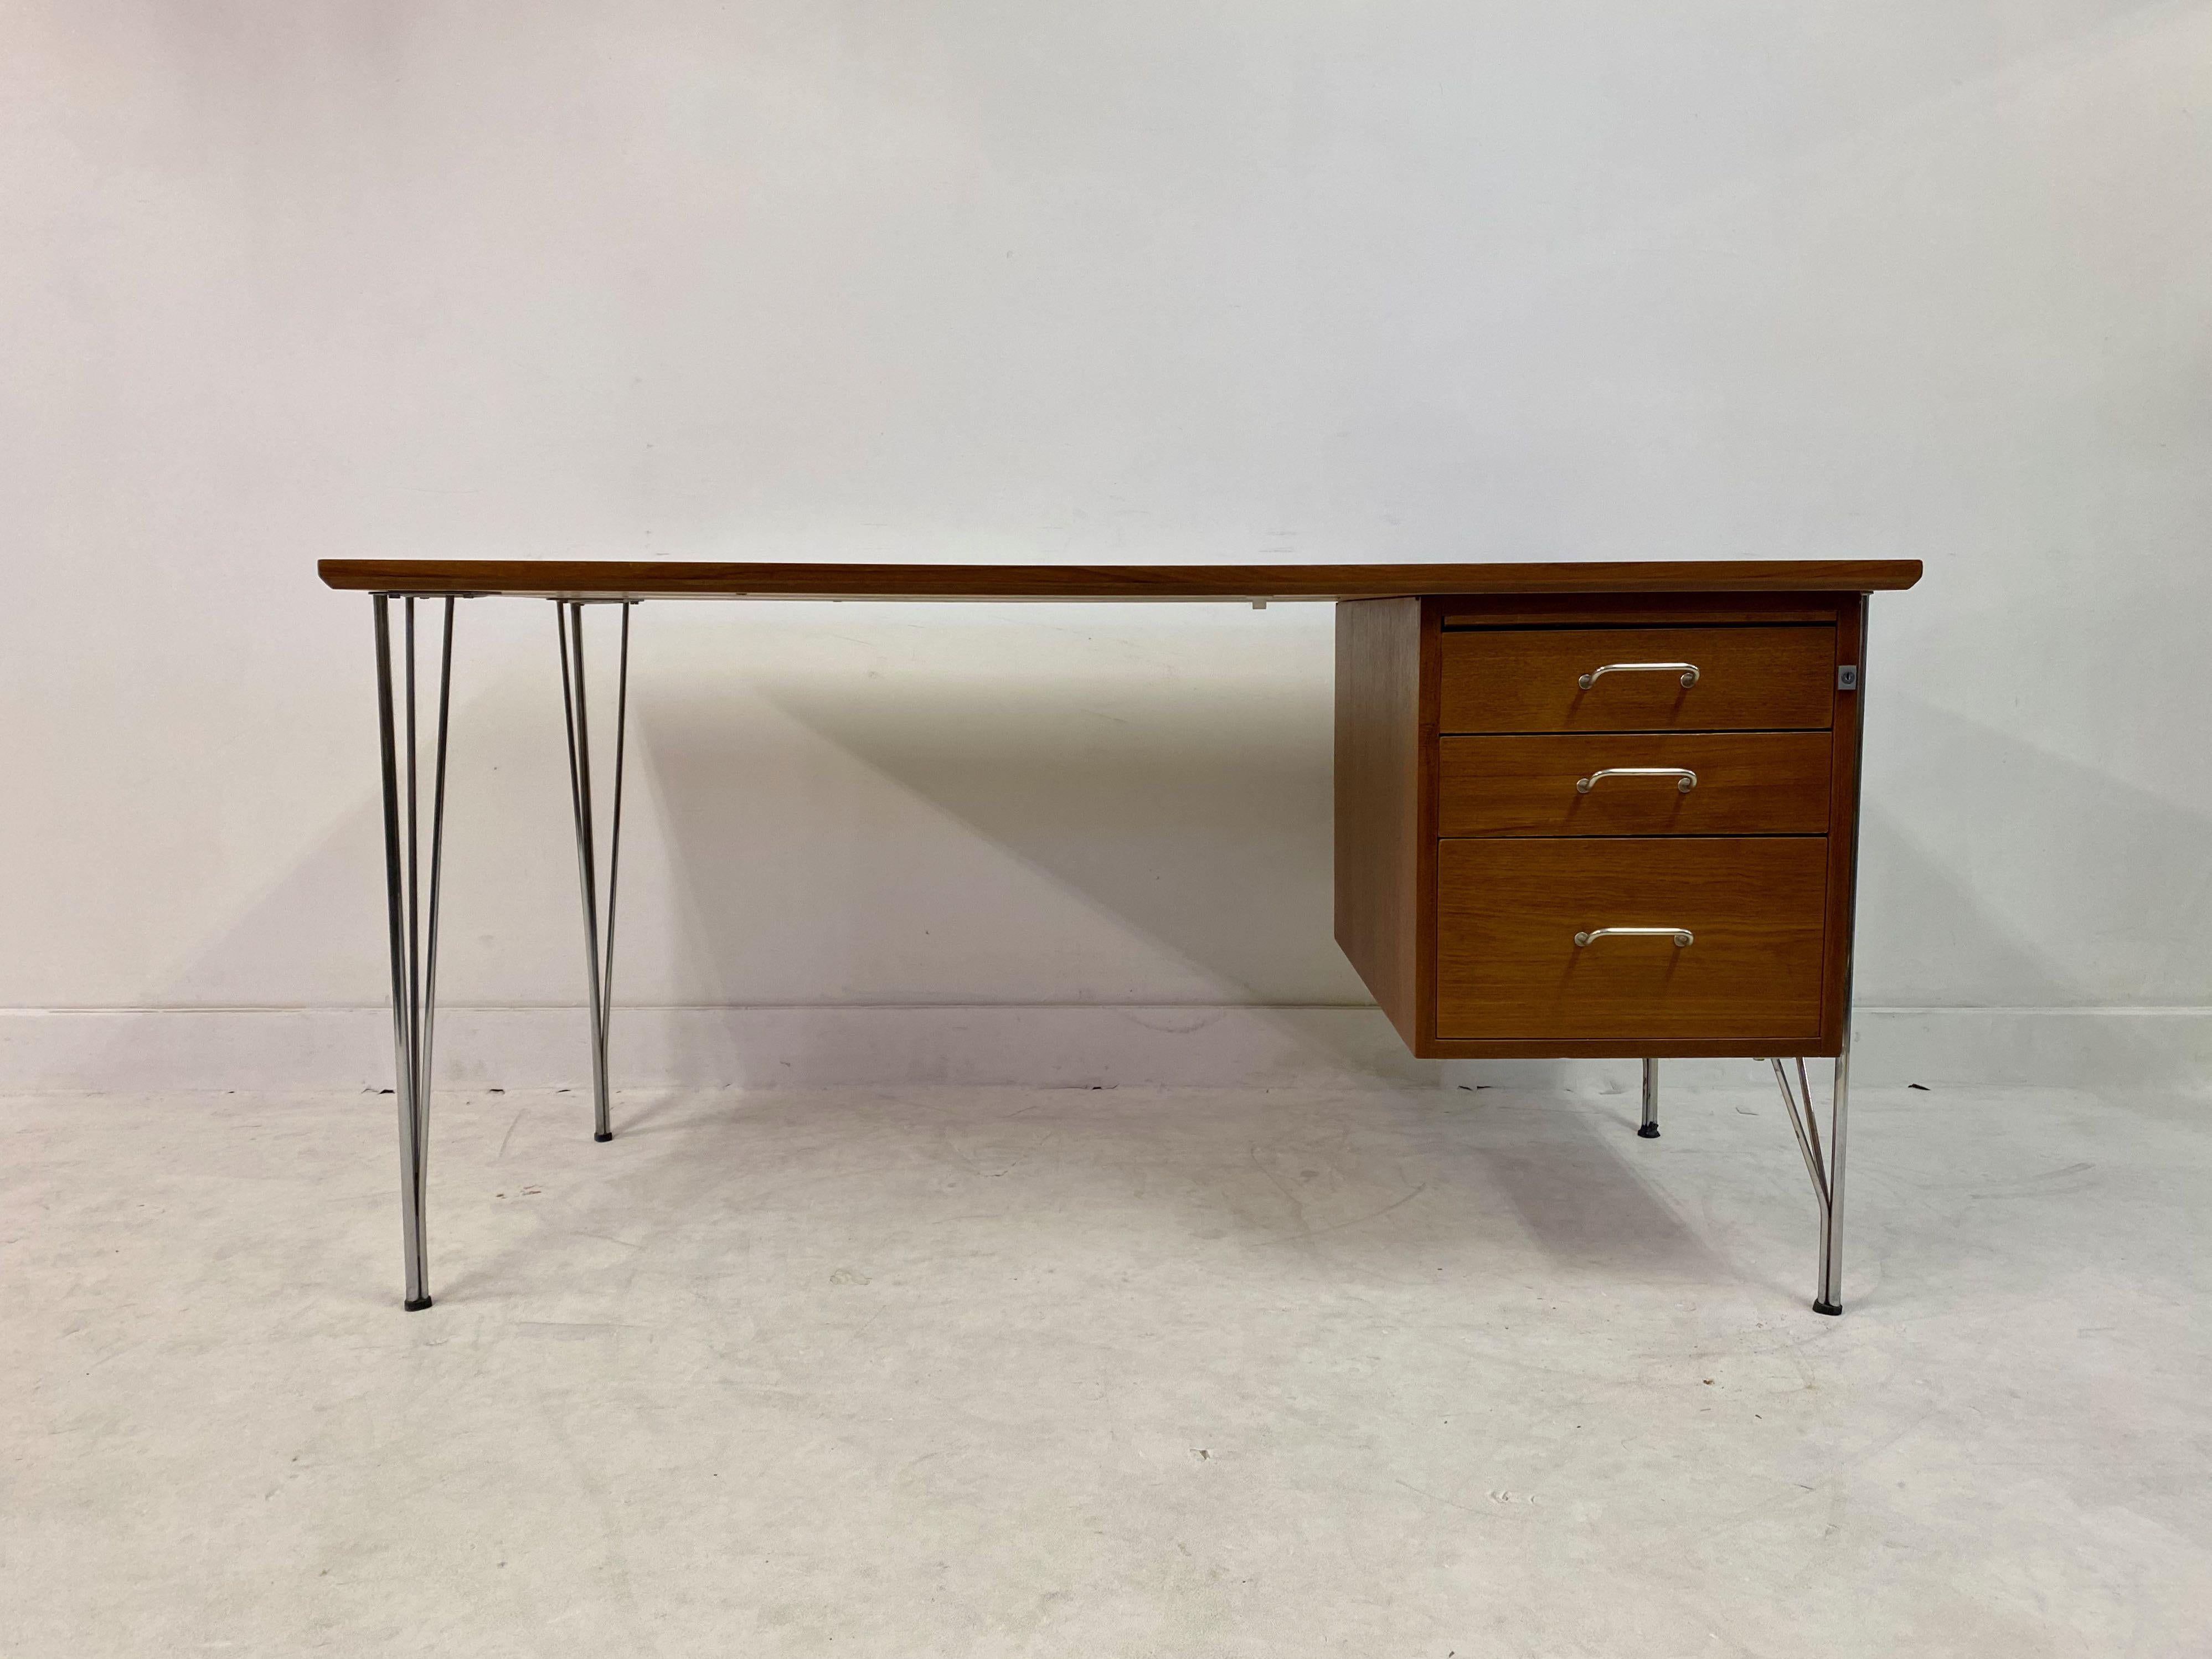 Teak desk

Three drawers

Chrome hairpin legs

Professionally restored

Denmark, 1960s-1970s.